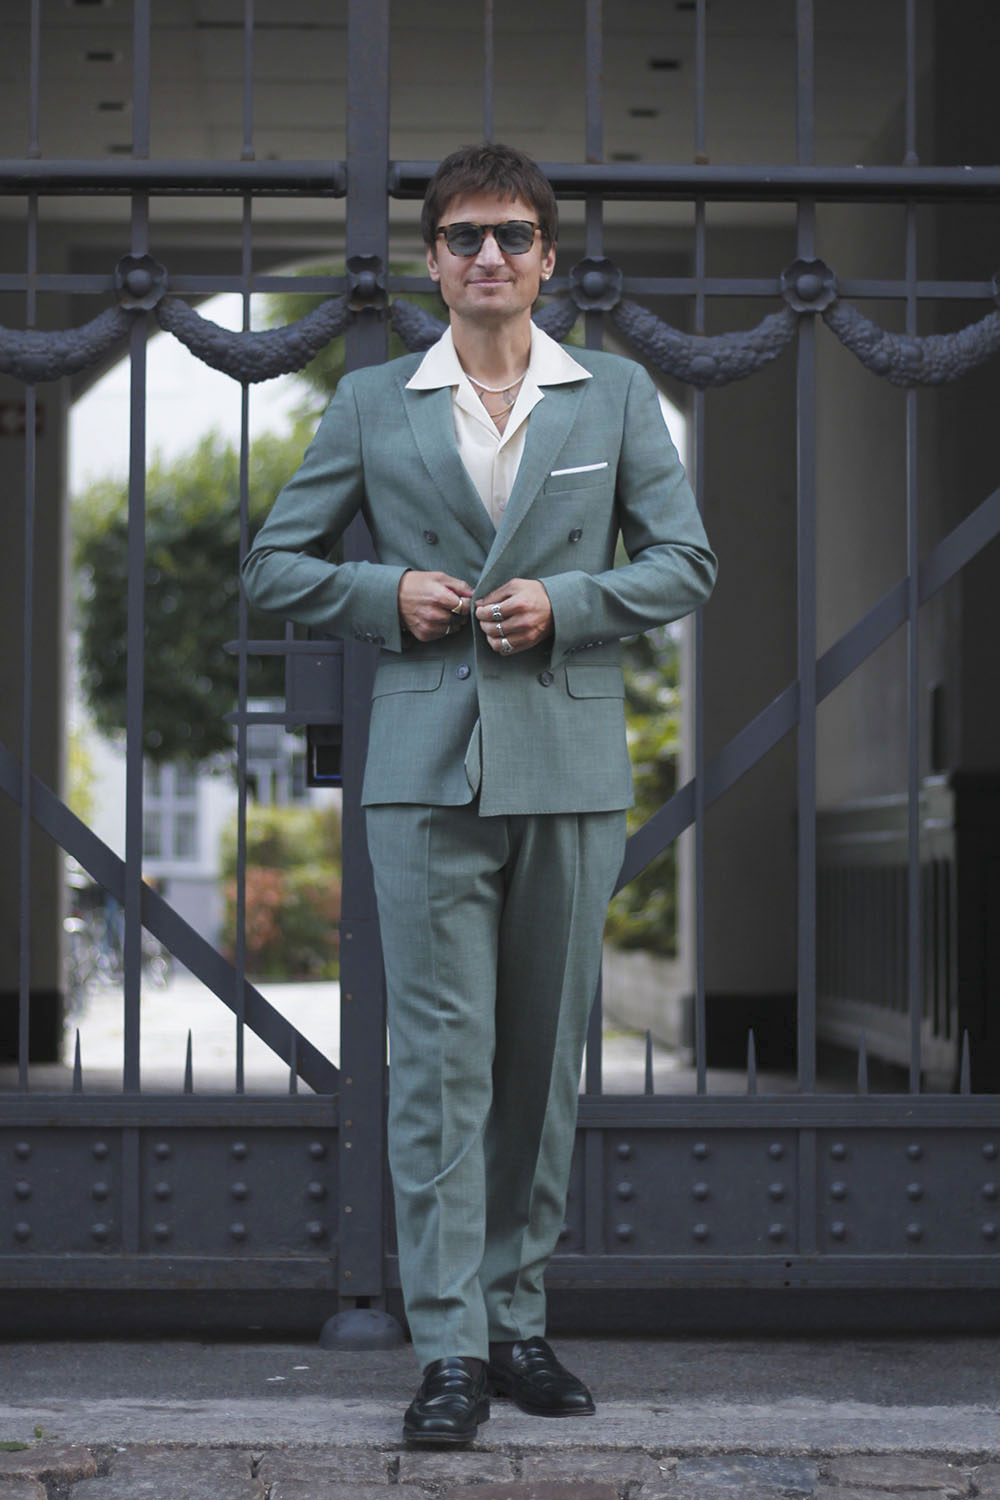 lysegrøn hør jakkesæt habitjakke suit med revers skjorte i lys farve og solbriller på